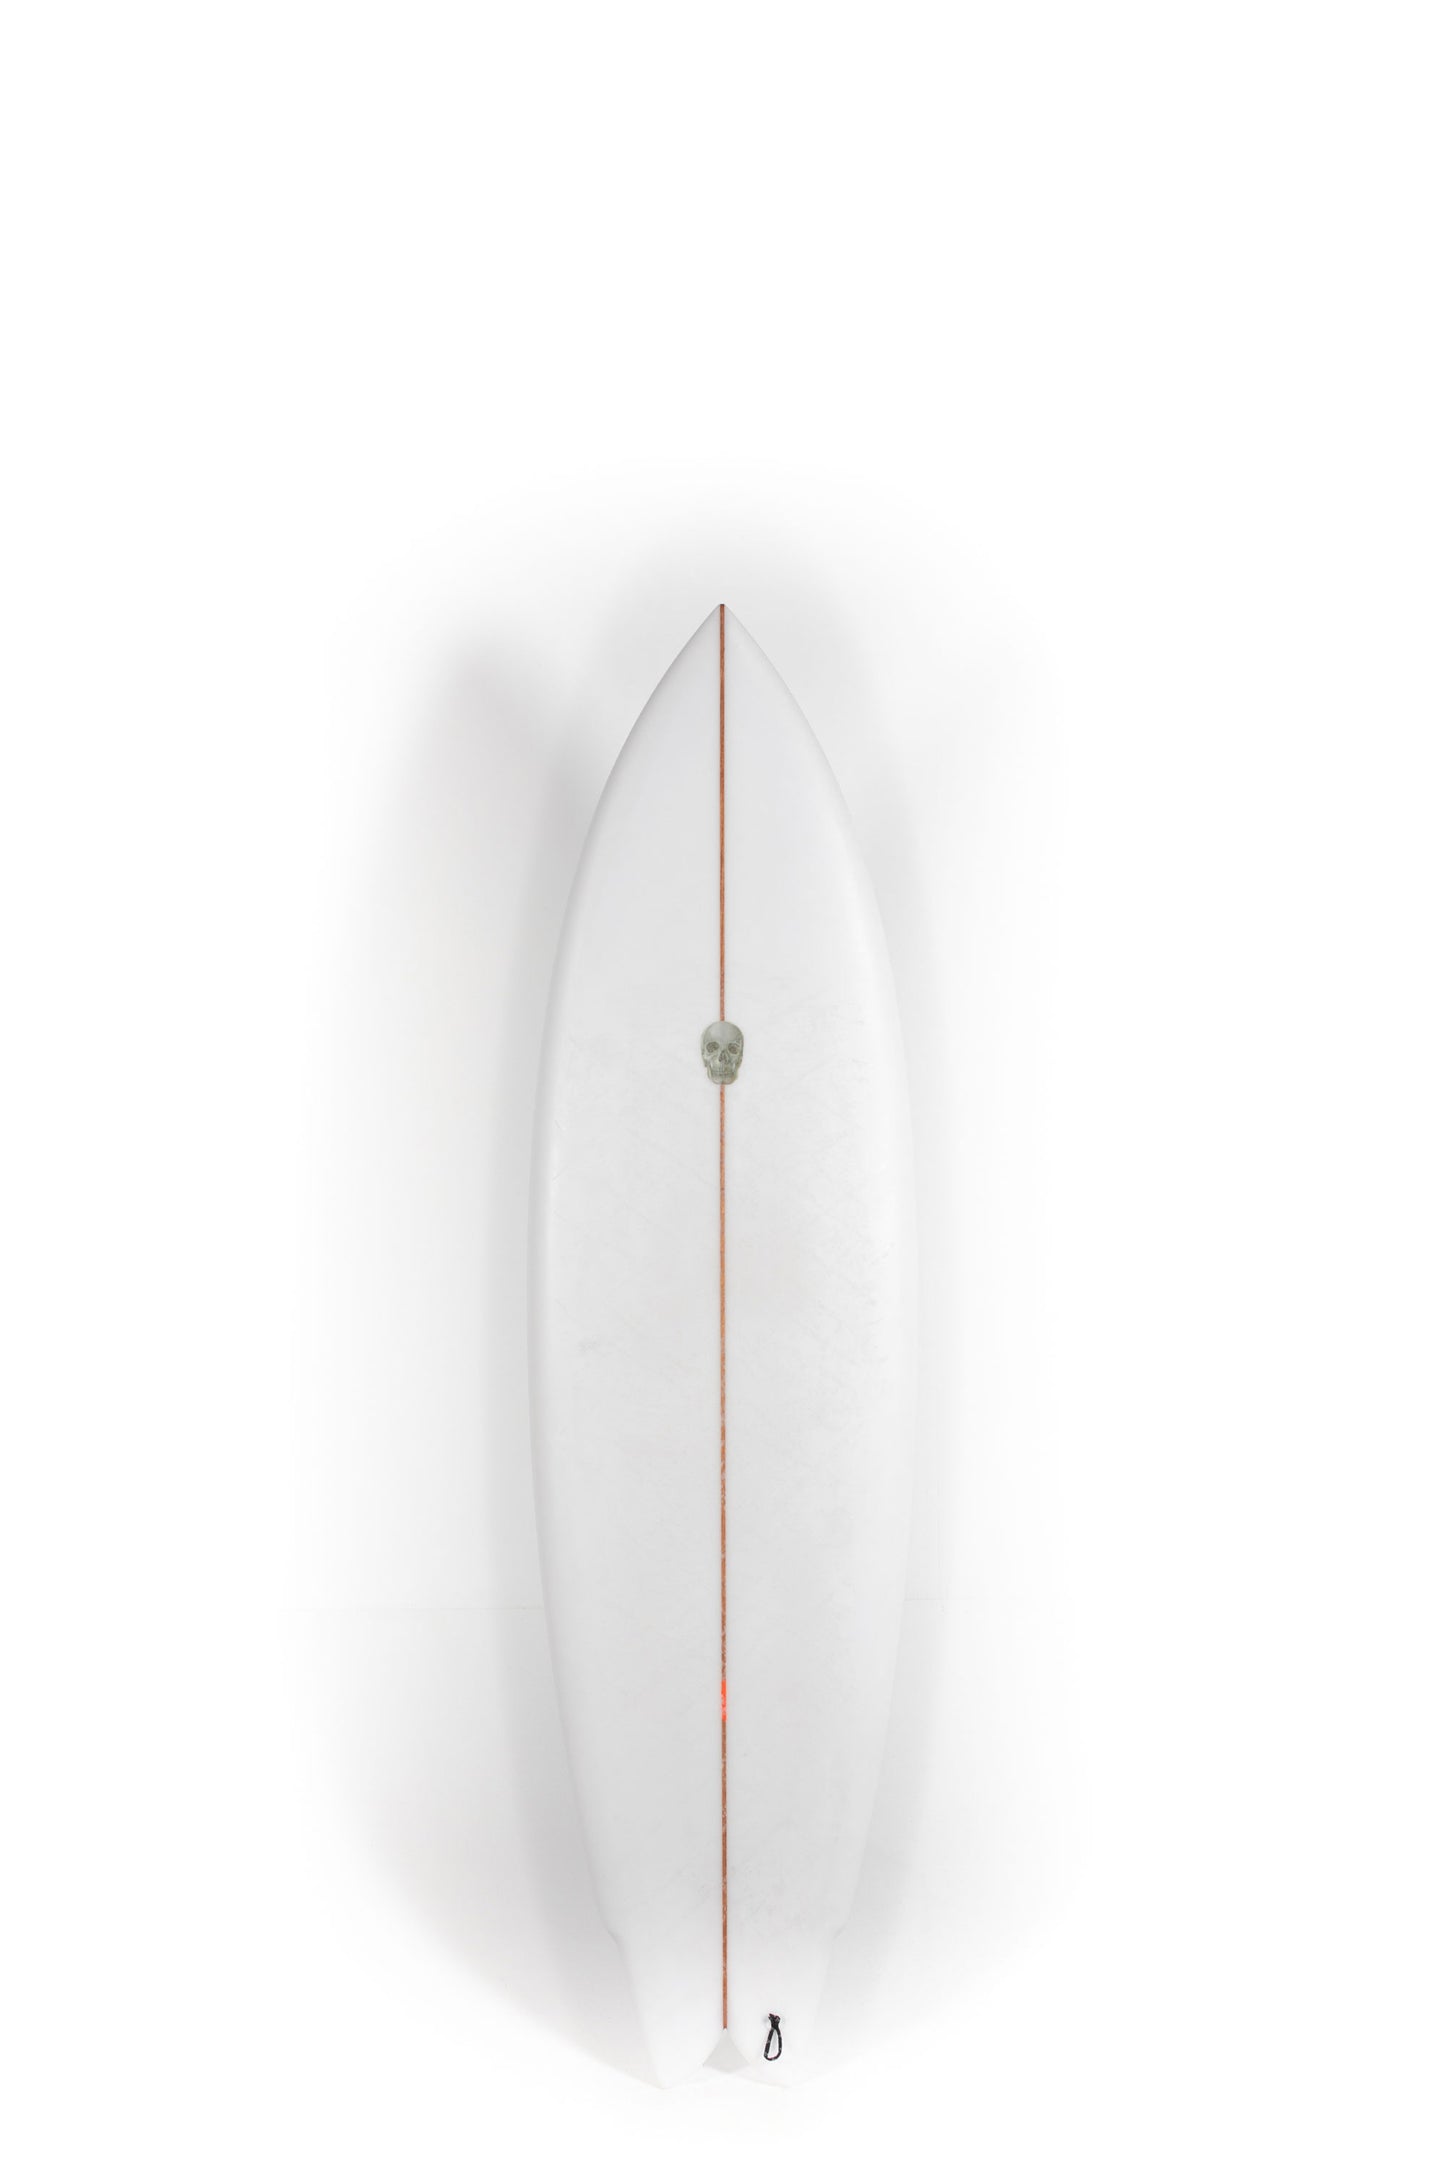    Pukas-Surf-Shop-Christenson-Surfboard-Wolverine-6_6